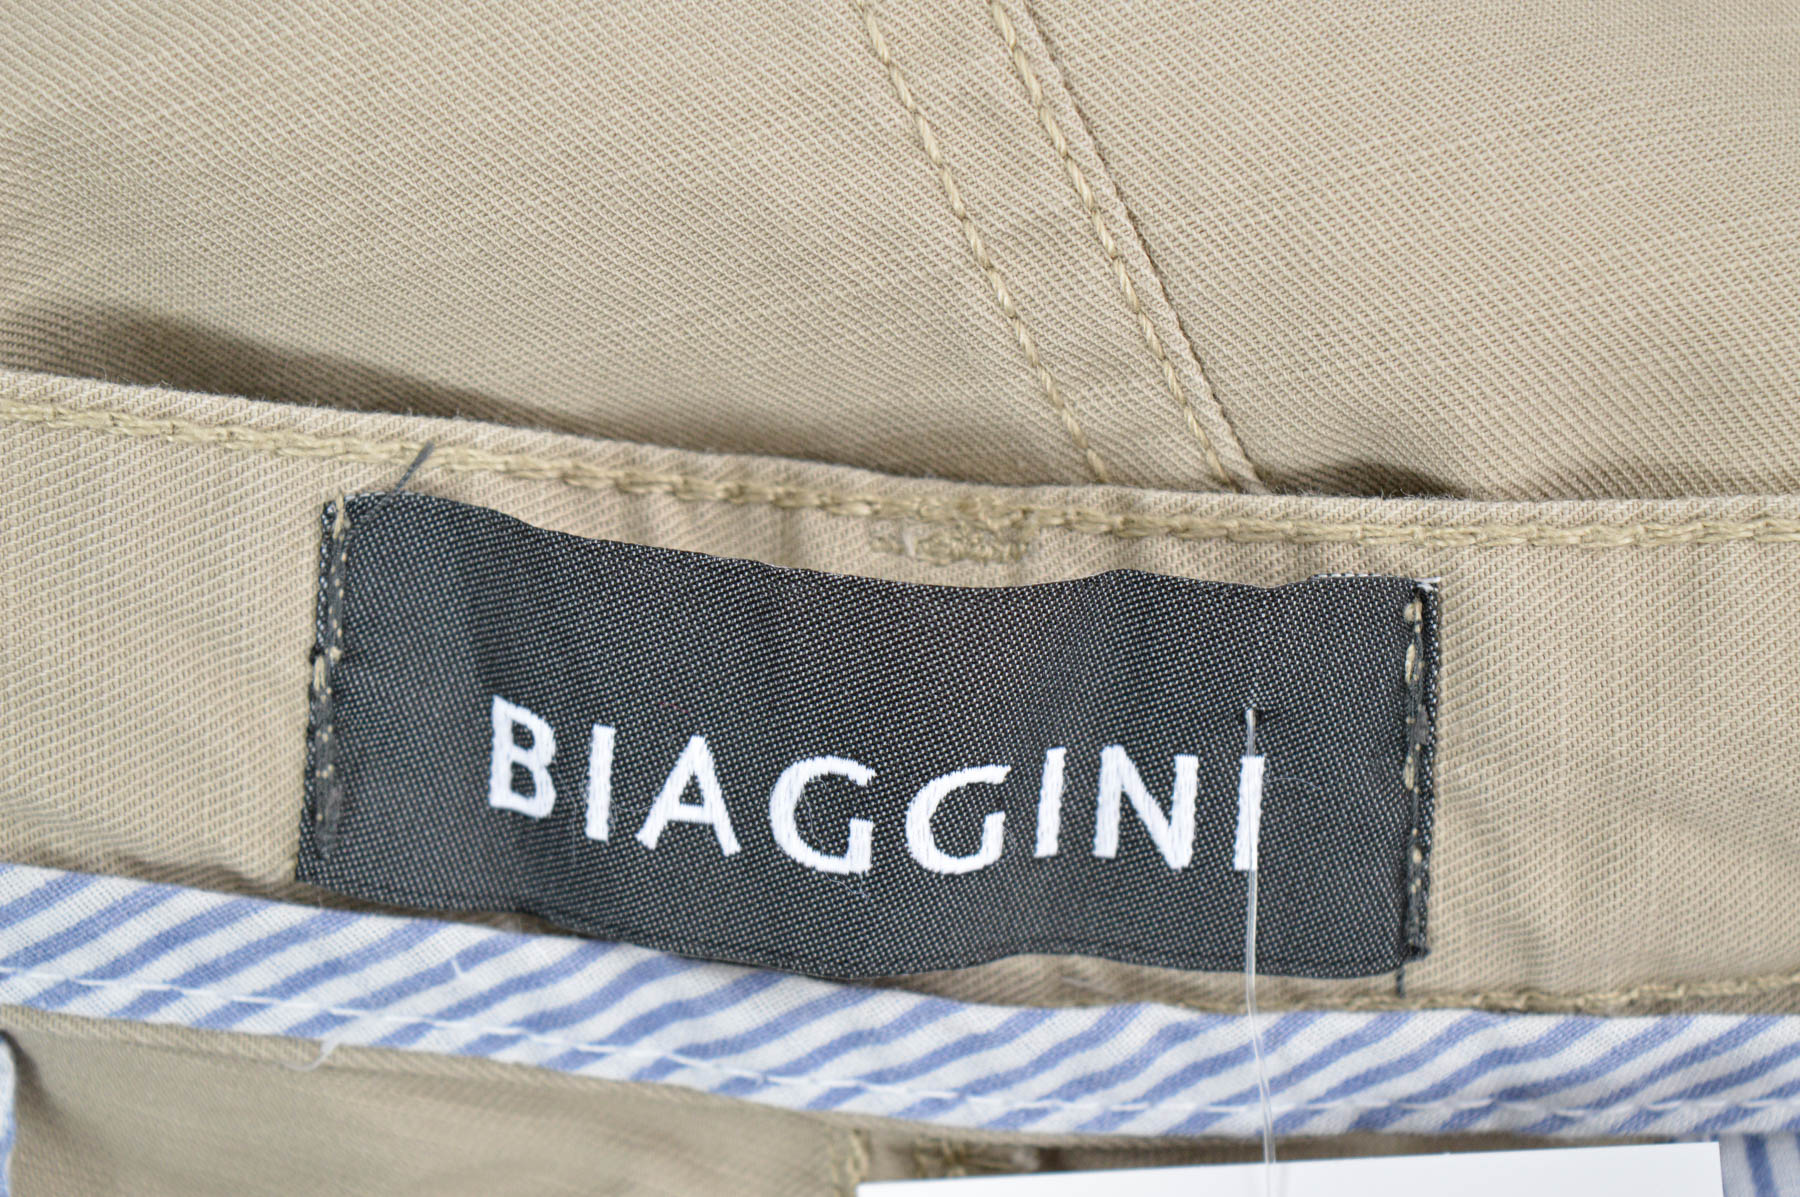 Pantaloni scurți bărbați - Biaggini - 2